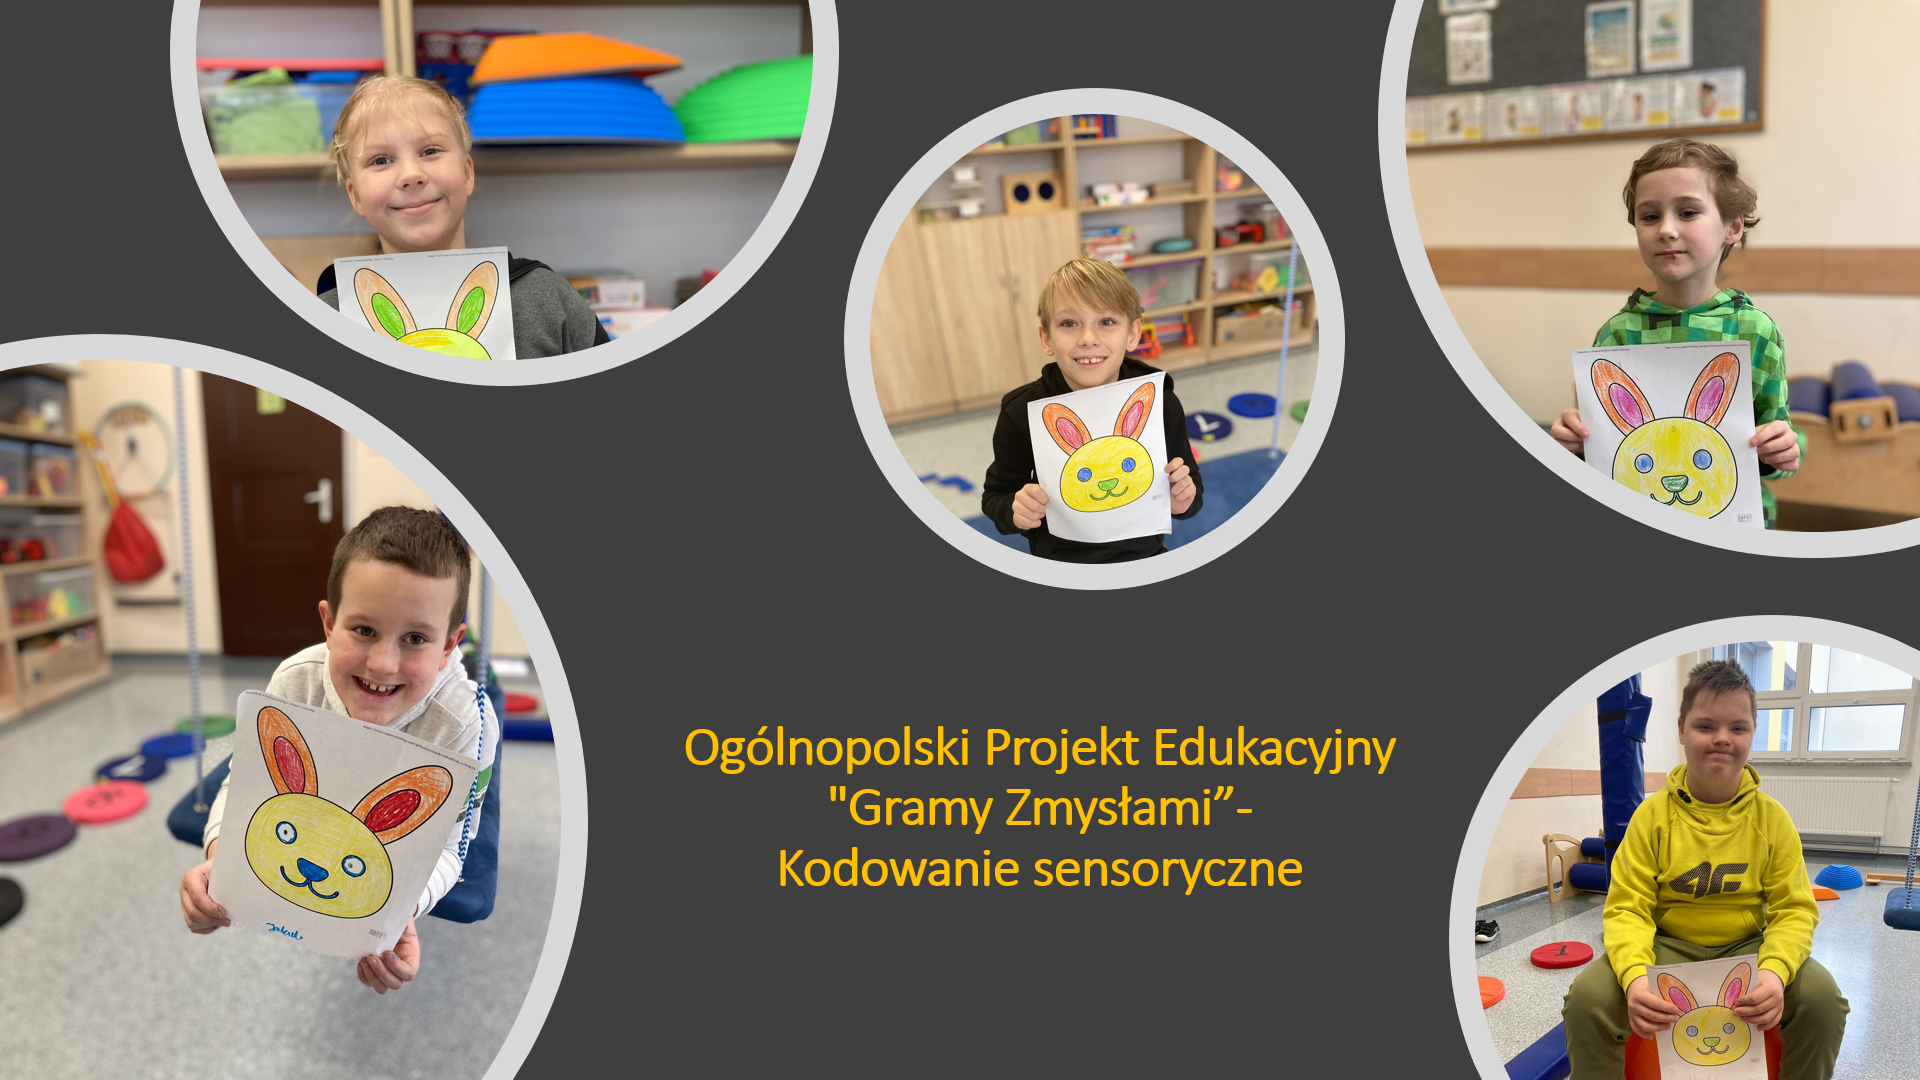 Ogólnopolski Projekt Edukacyjny "Gramy Zmysłami”- Kodowanie sensoryczne.